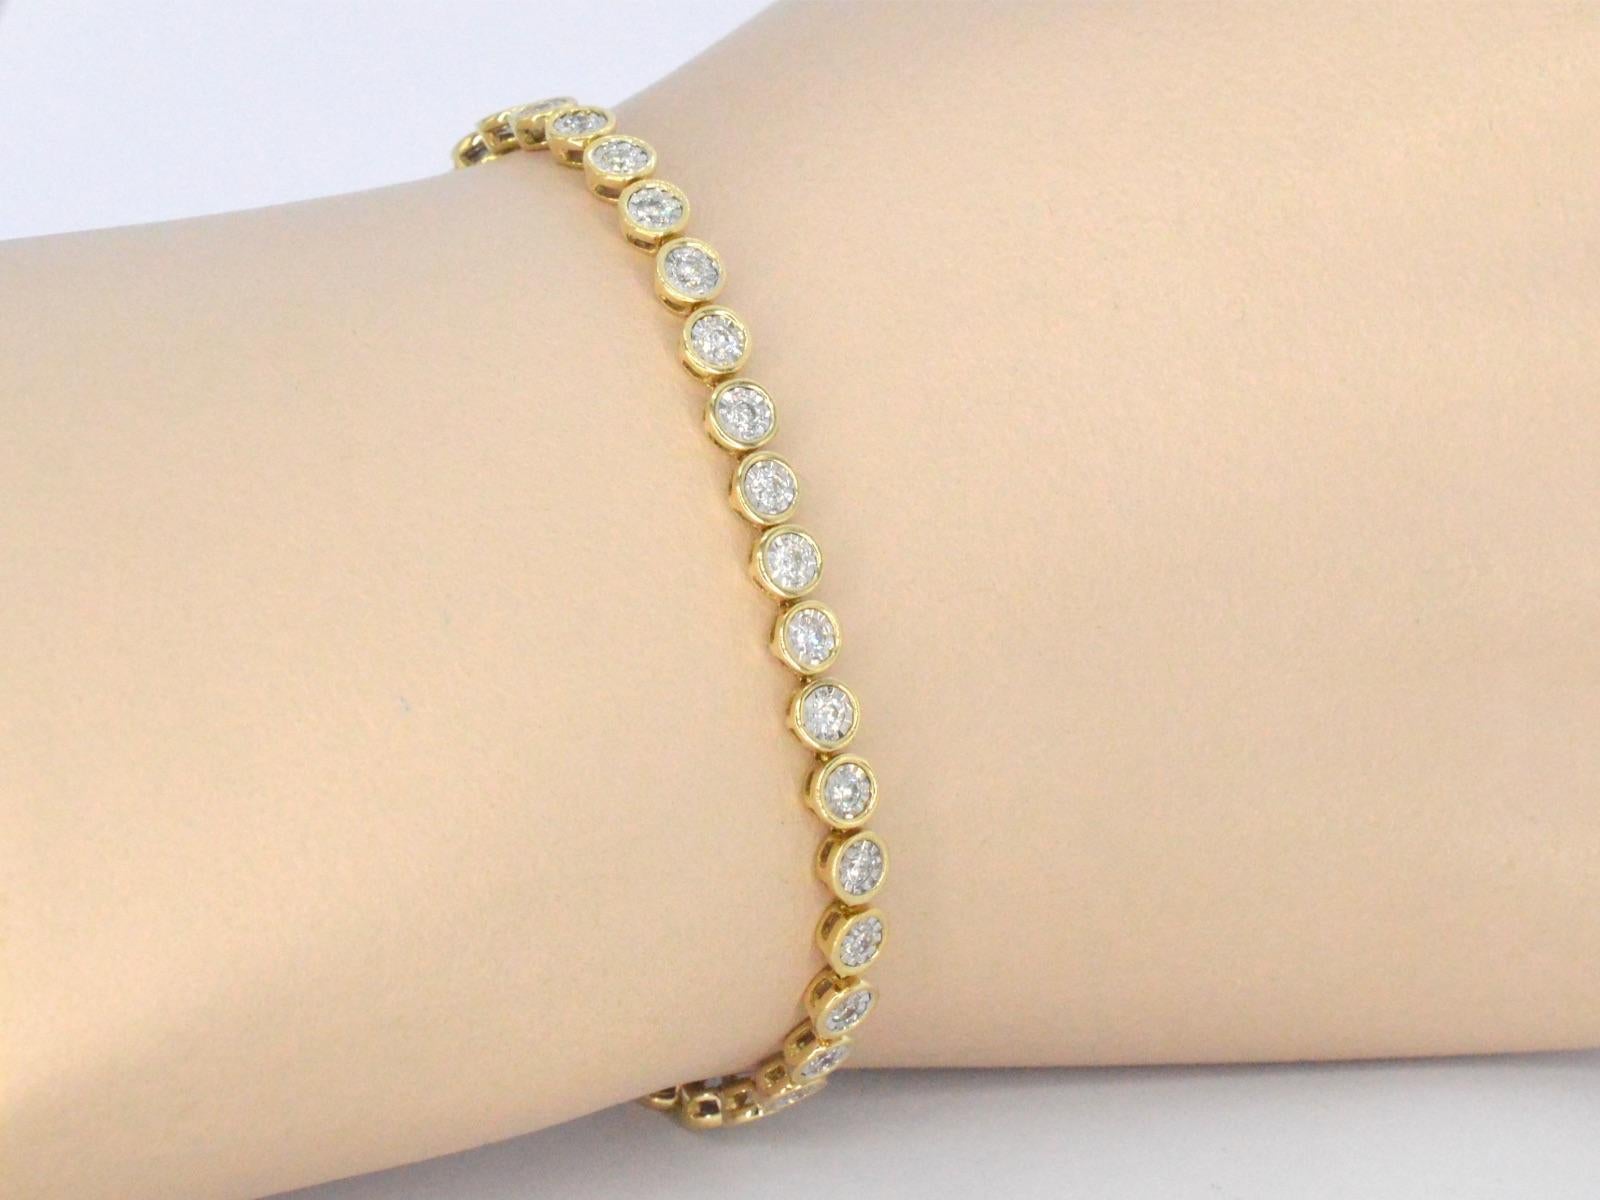 Ce bracelet en or 14 carats est un bijou élégant qui respire le luxe et la sophistication. Il est orné de diamants taille brillant qui ajoutent une touche de glamour étincelant à son design déjà éblouissant. Ce bracelet est parfait pour toute